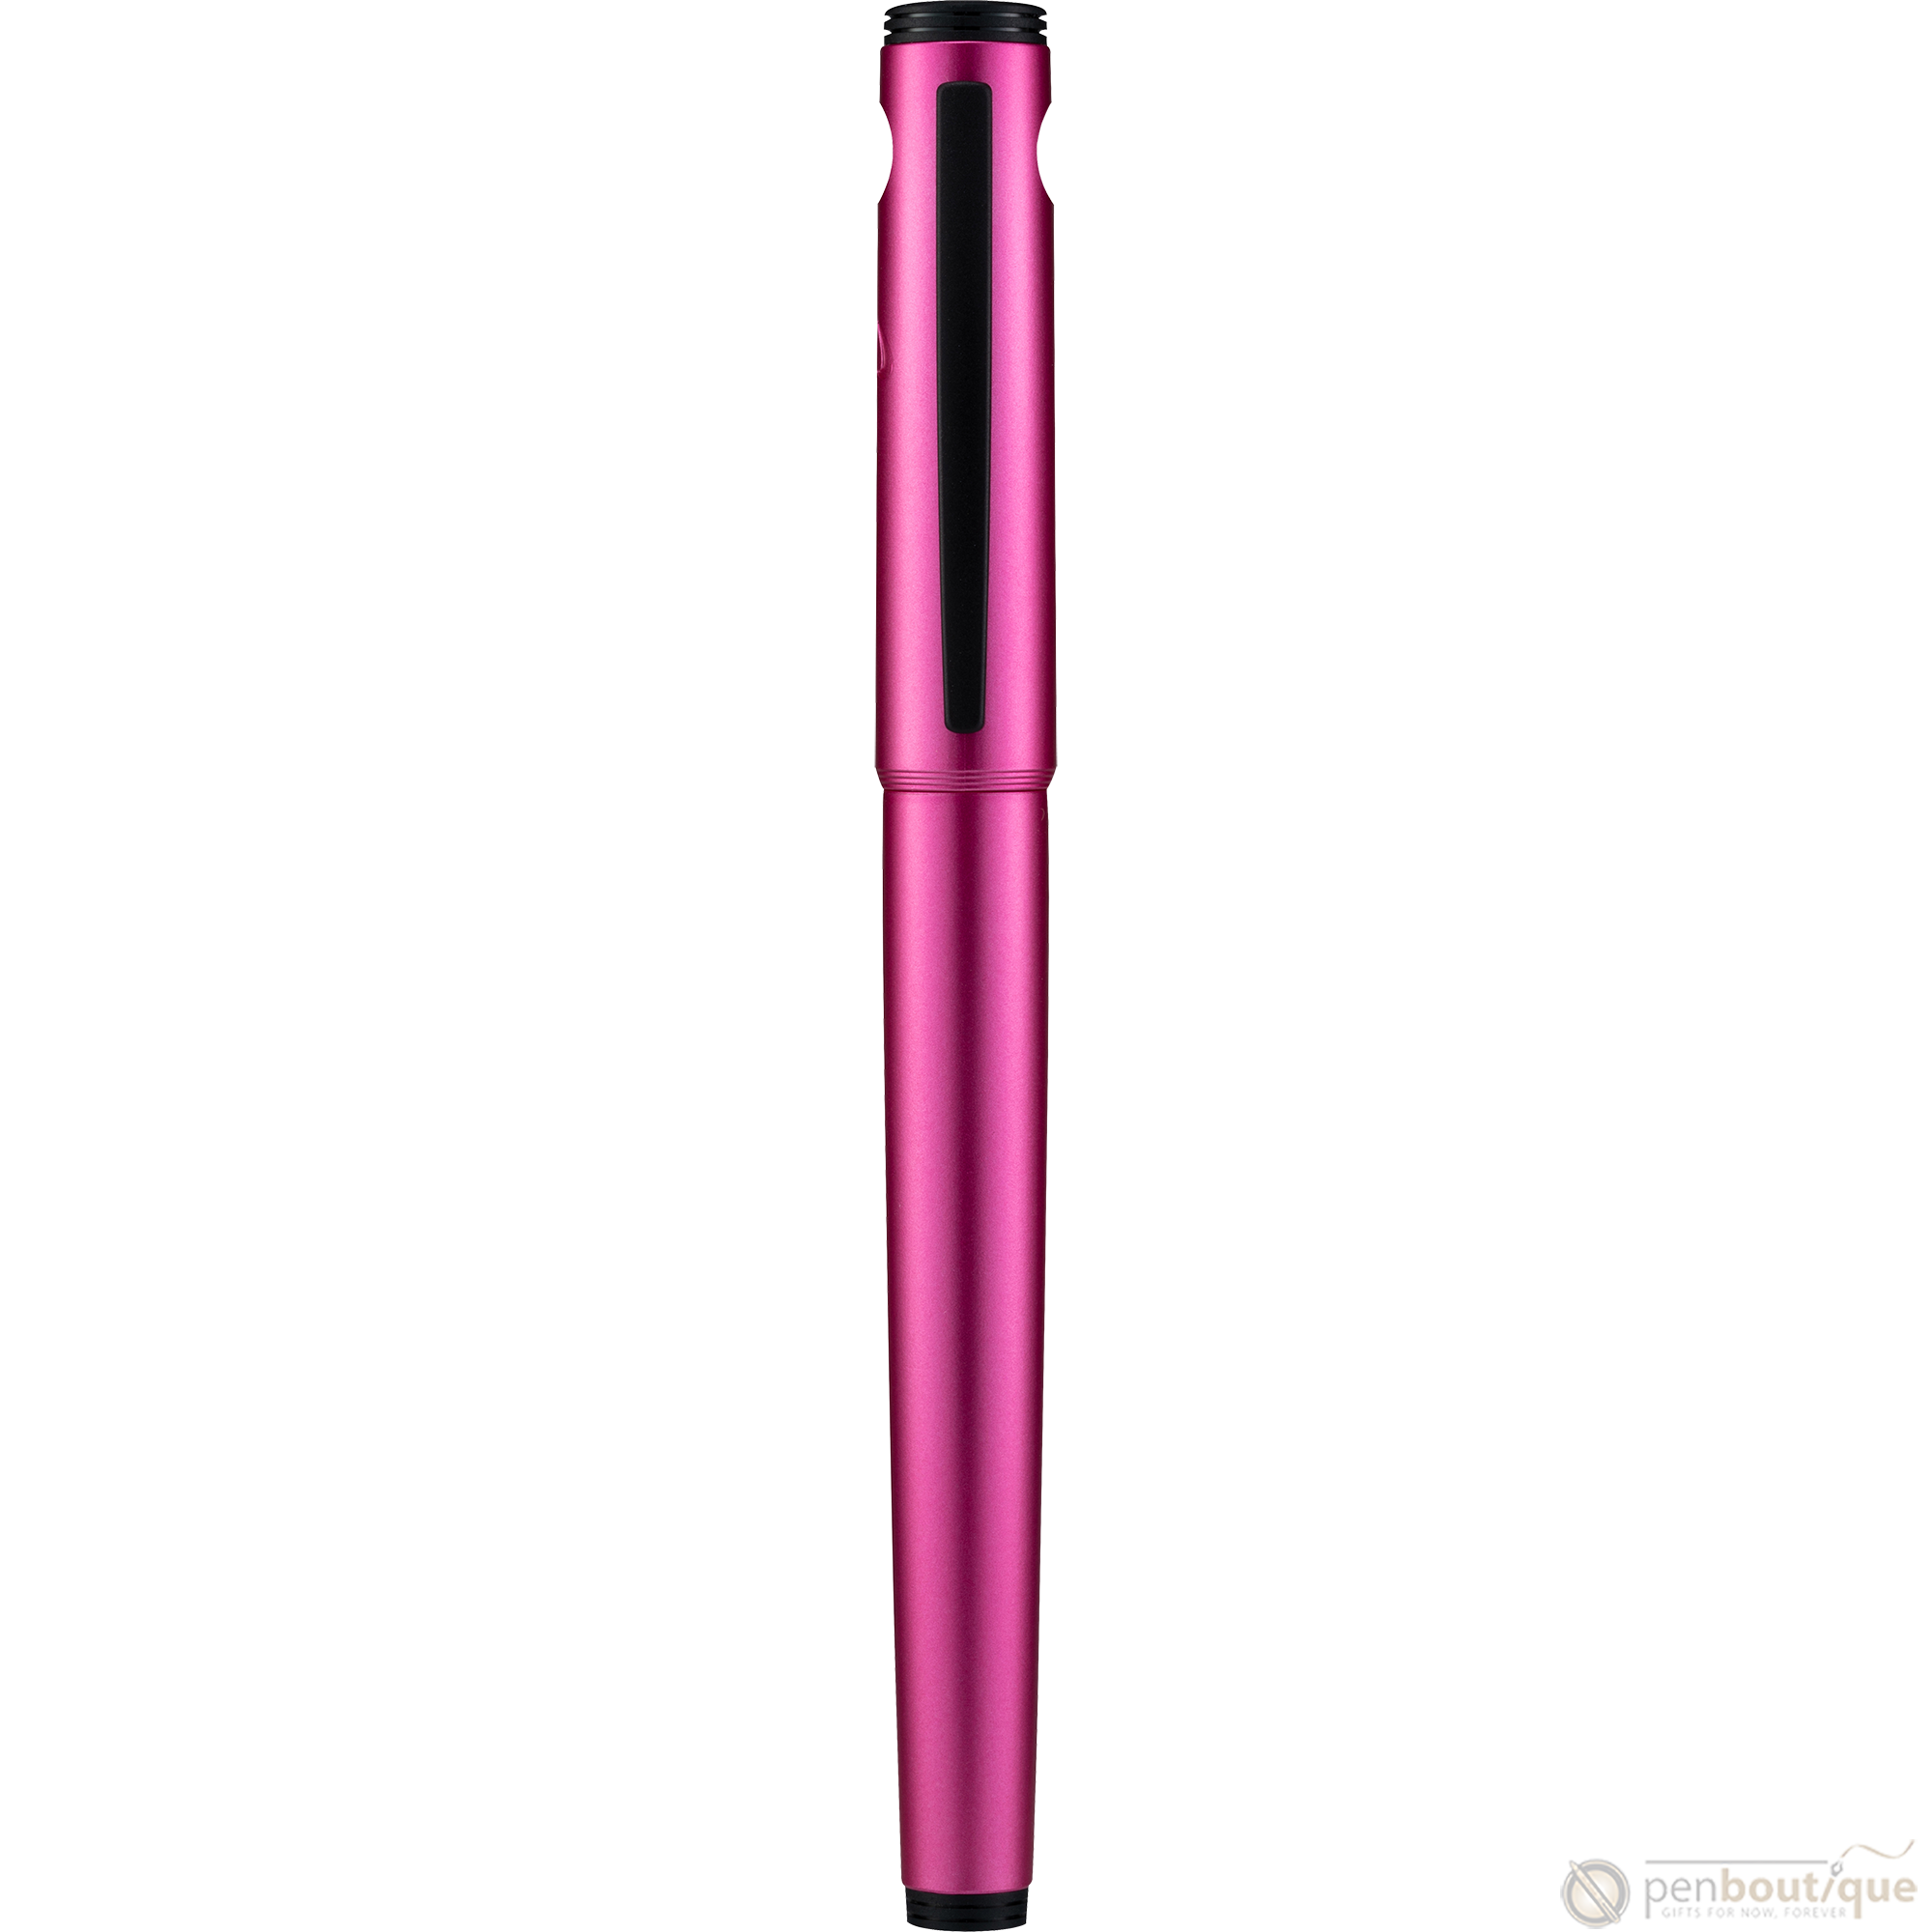 Pilot Explorer Fountain Pen - Pink-Pen Boutique Ltd